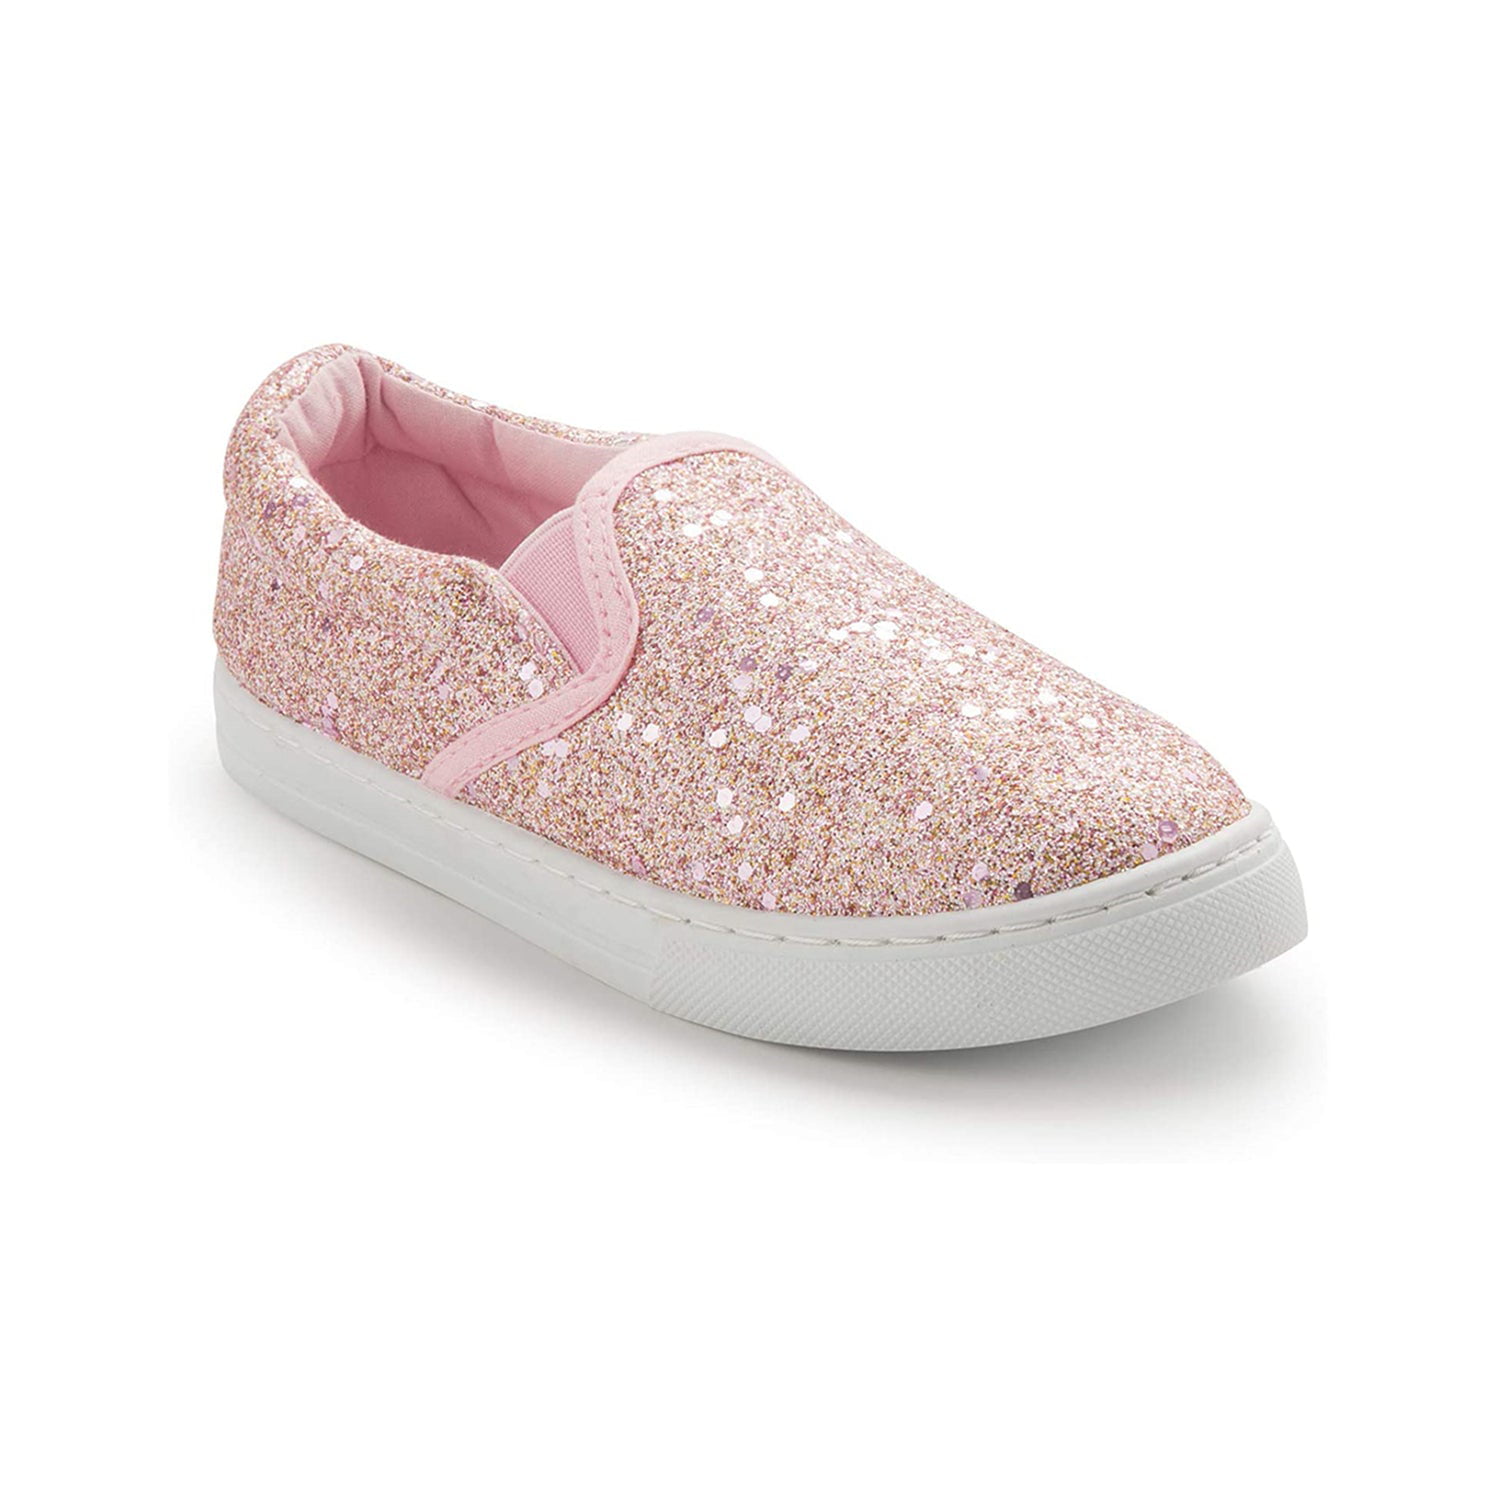 K KomForme Toddler Sneakers Girls Slip on Shoes